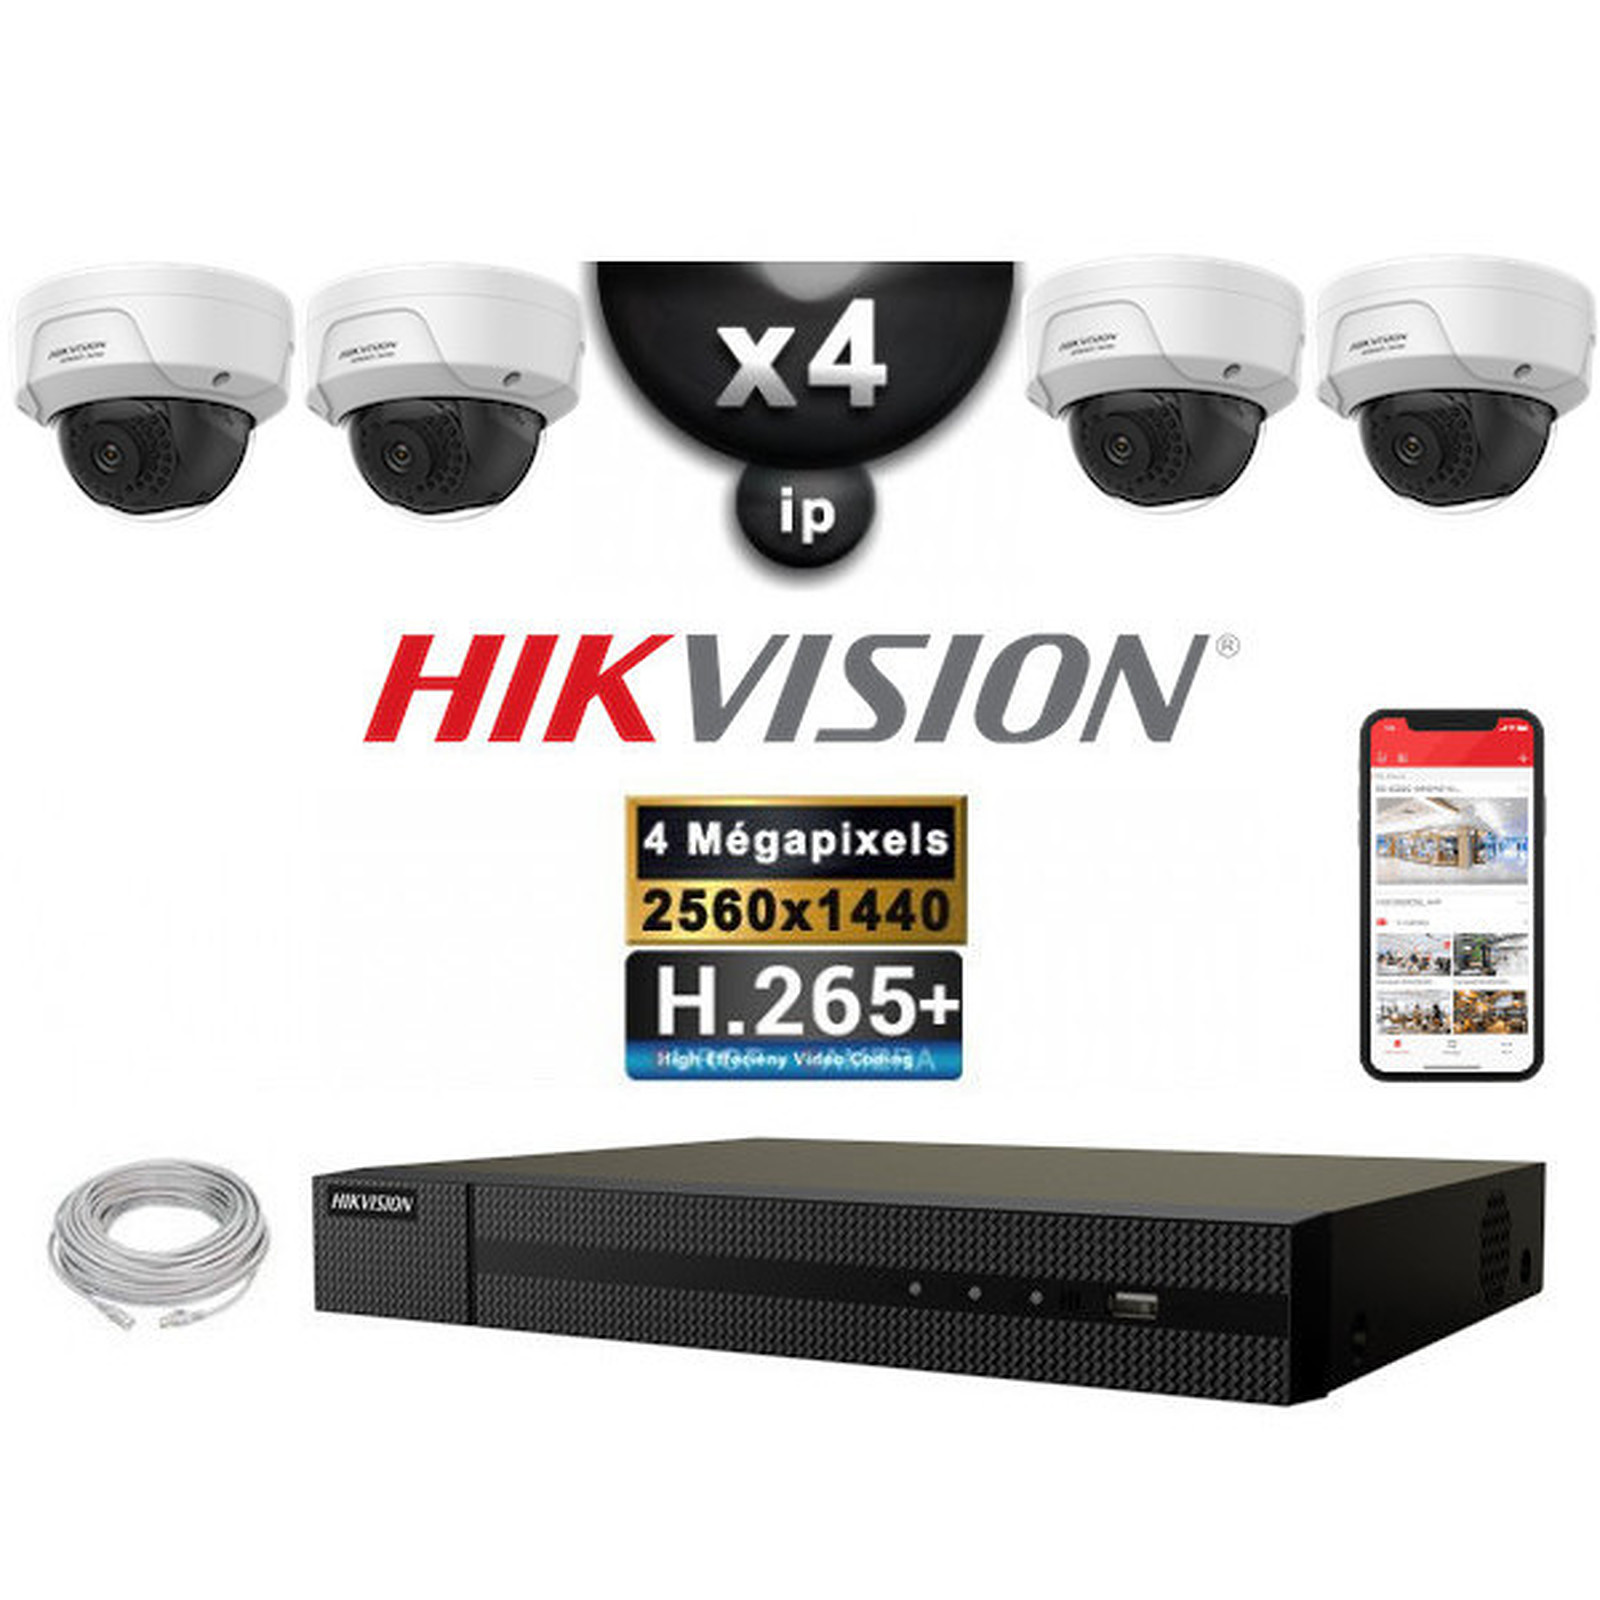 HIKVISION Kit Video Surveillance PRO IP : 4x Cameras POE Domes IR 30M 4 MP + Enregistreur NVR 4 canaux H265+ 2000 Go - Camera de surveillance Hikvision